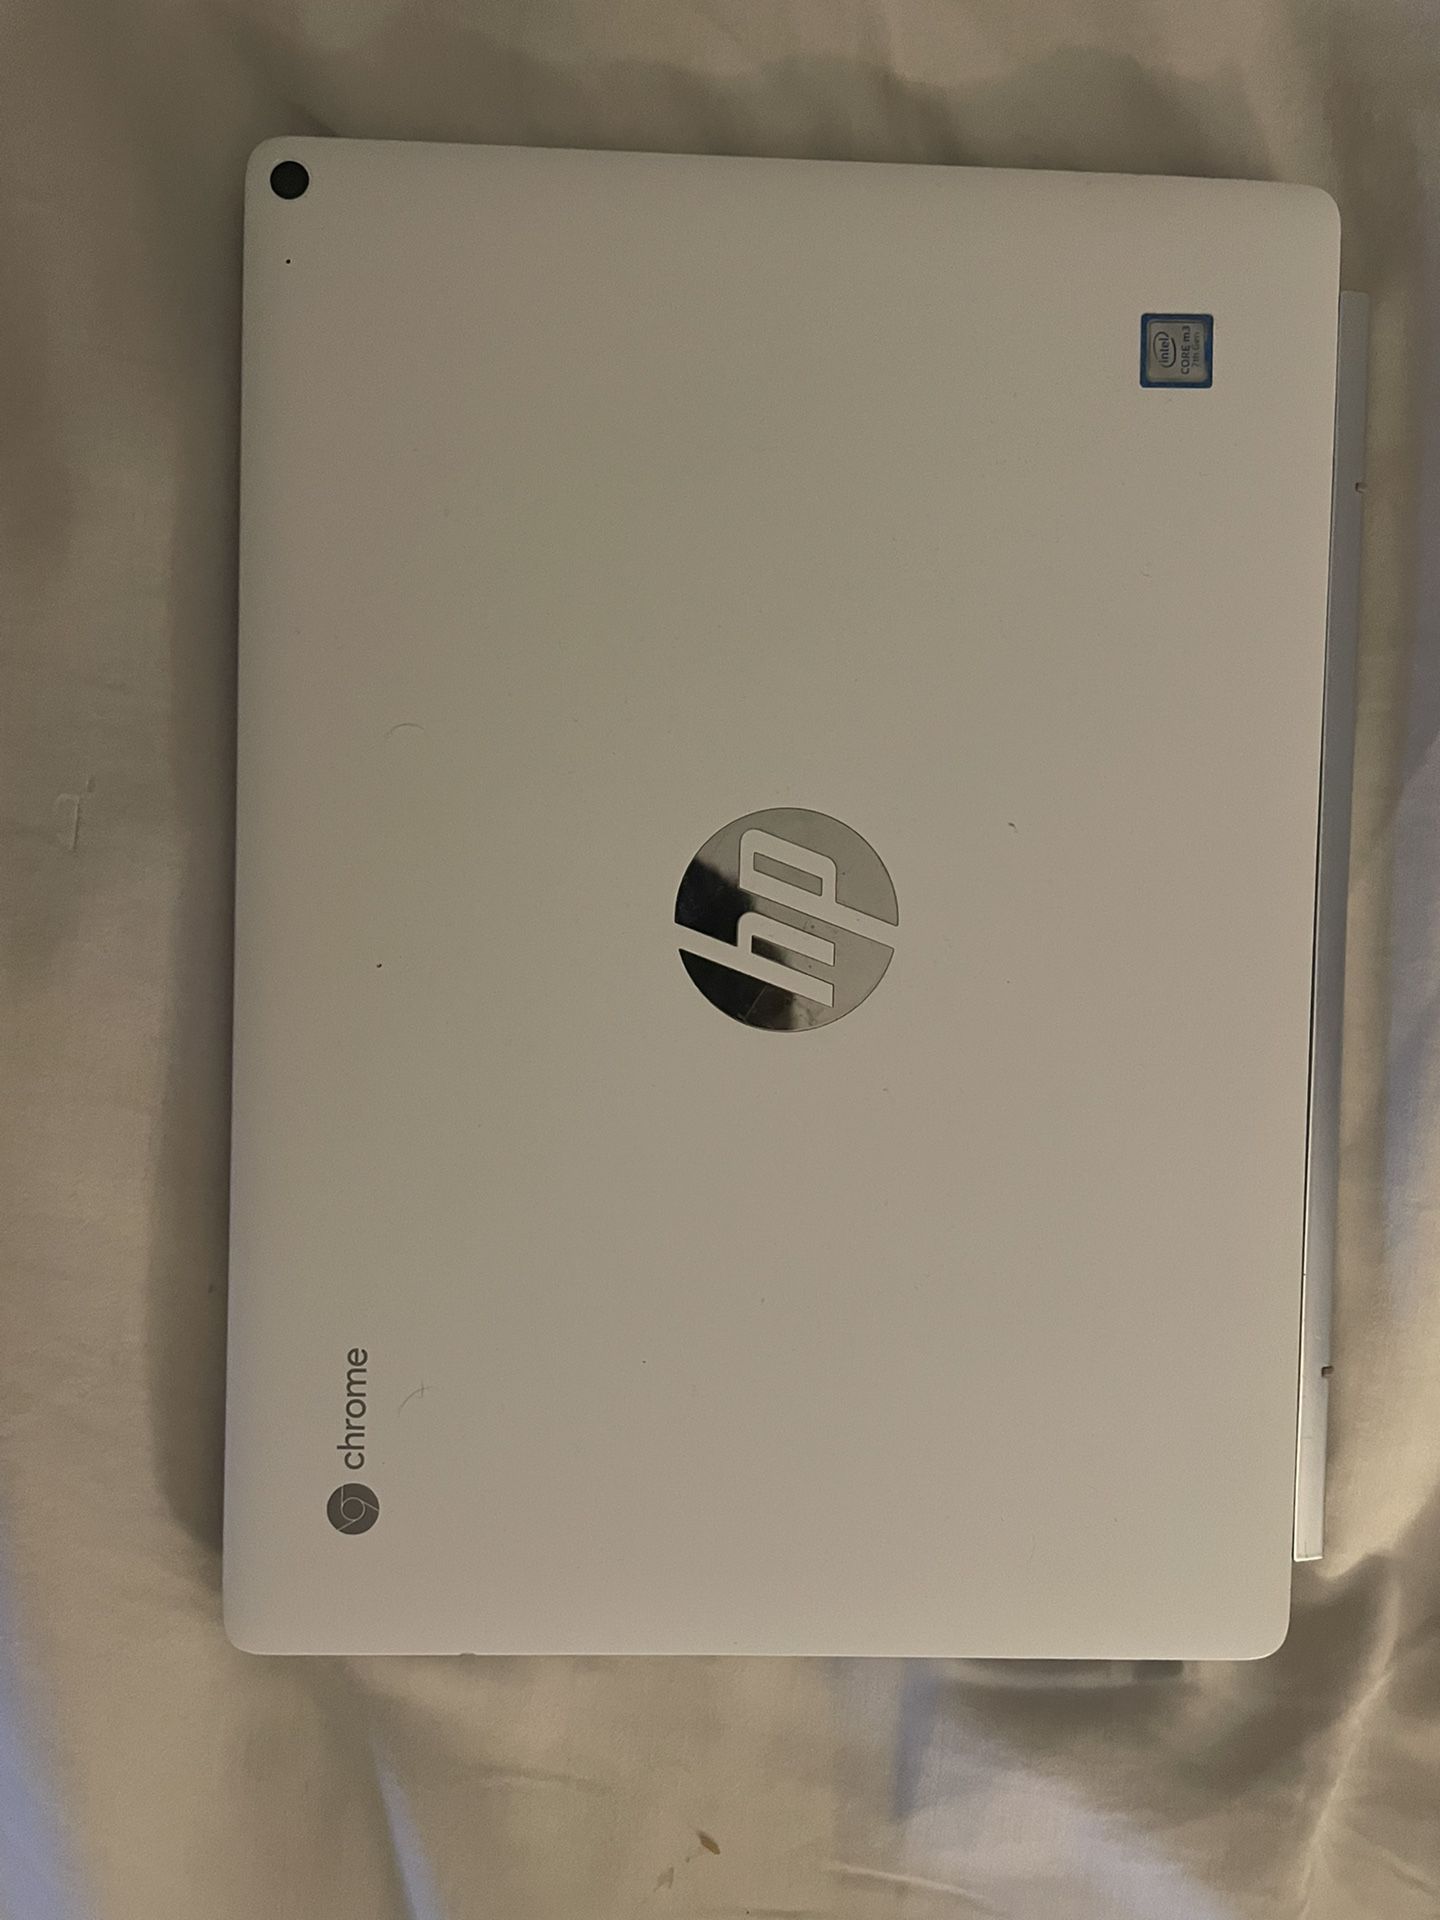 HP 2-in-1 Chromebook